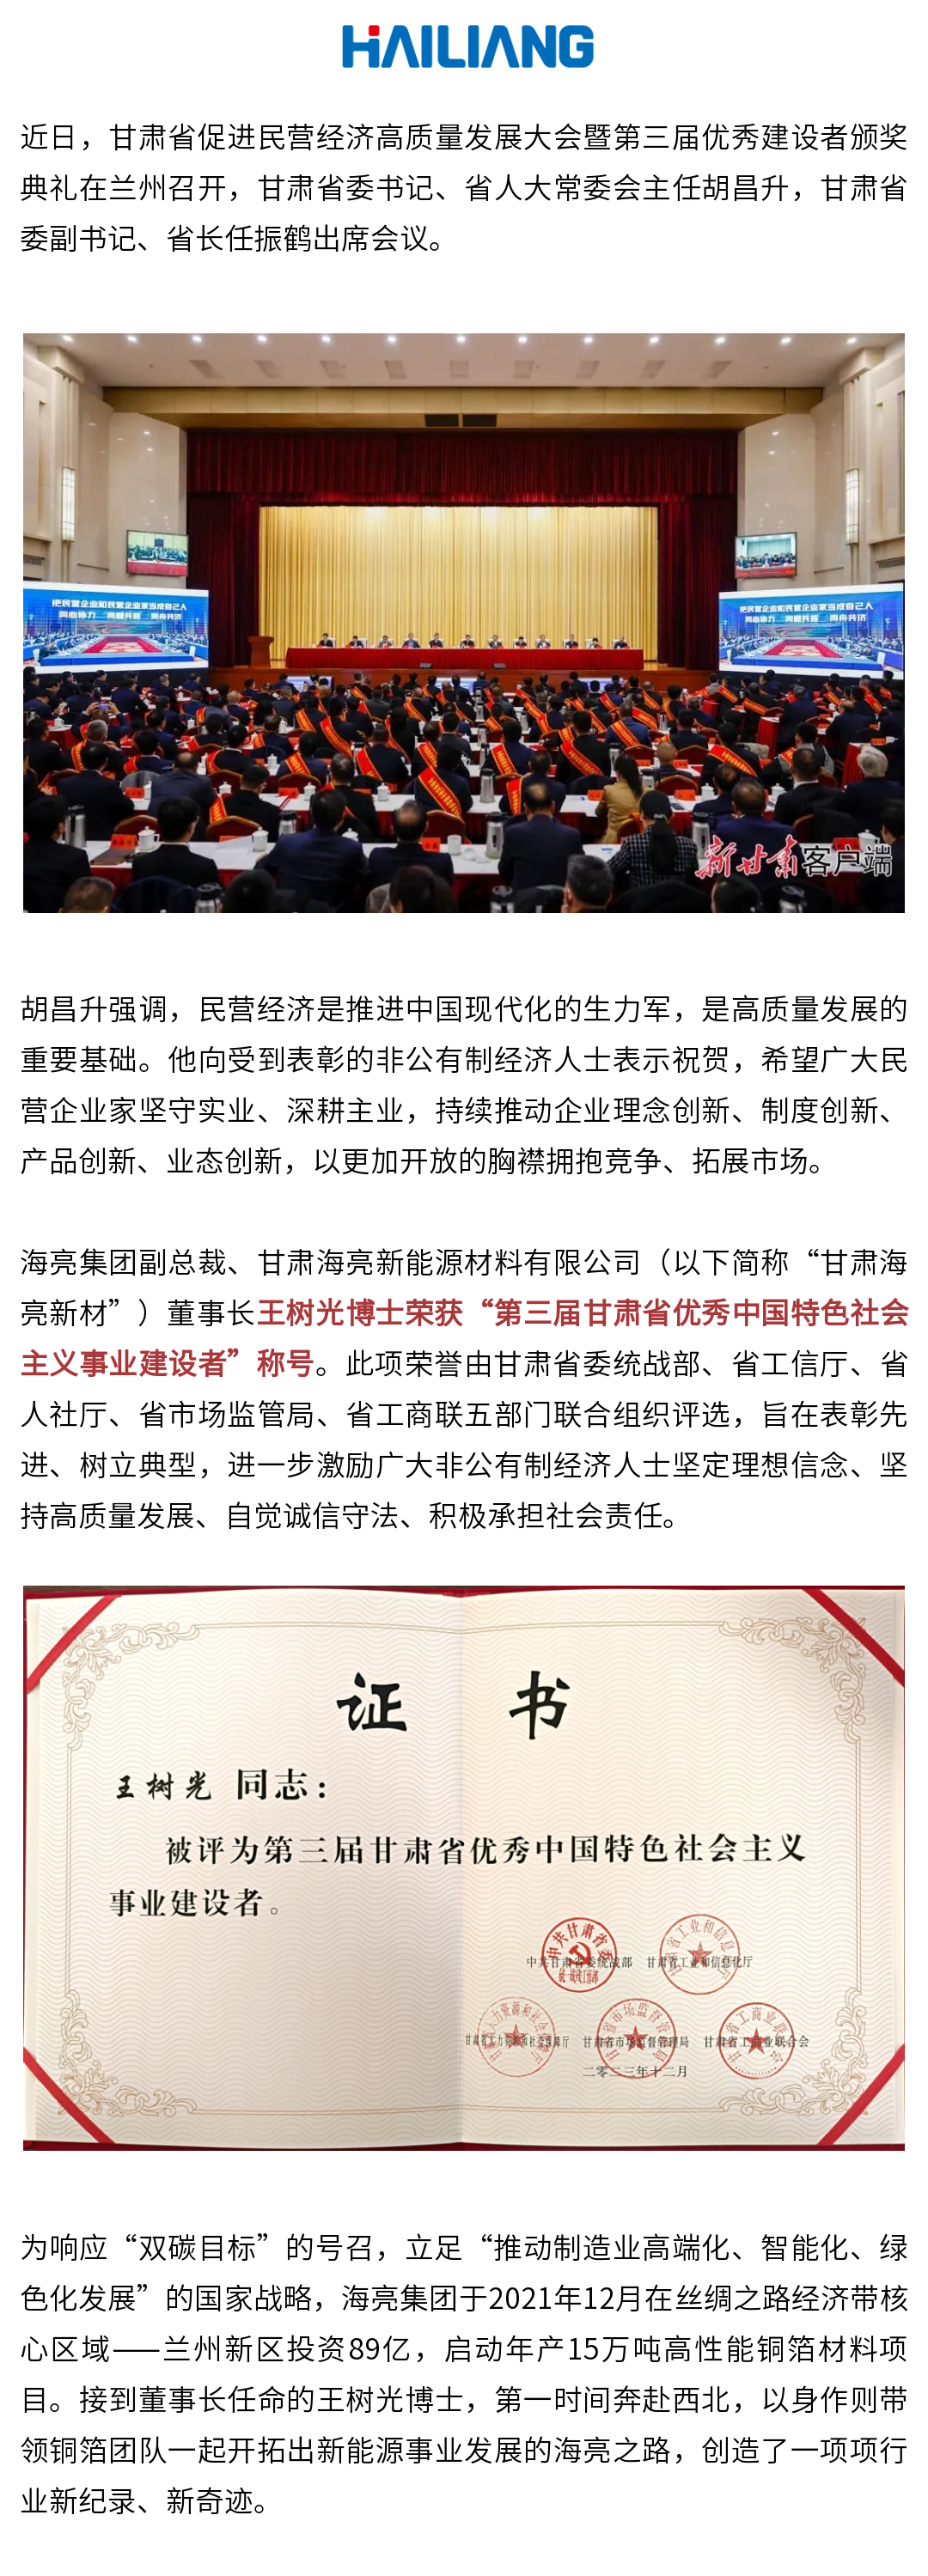 王树光博士荣获“第三届甘肃省优秀中国特色社会主义事业建设者”称号